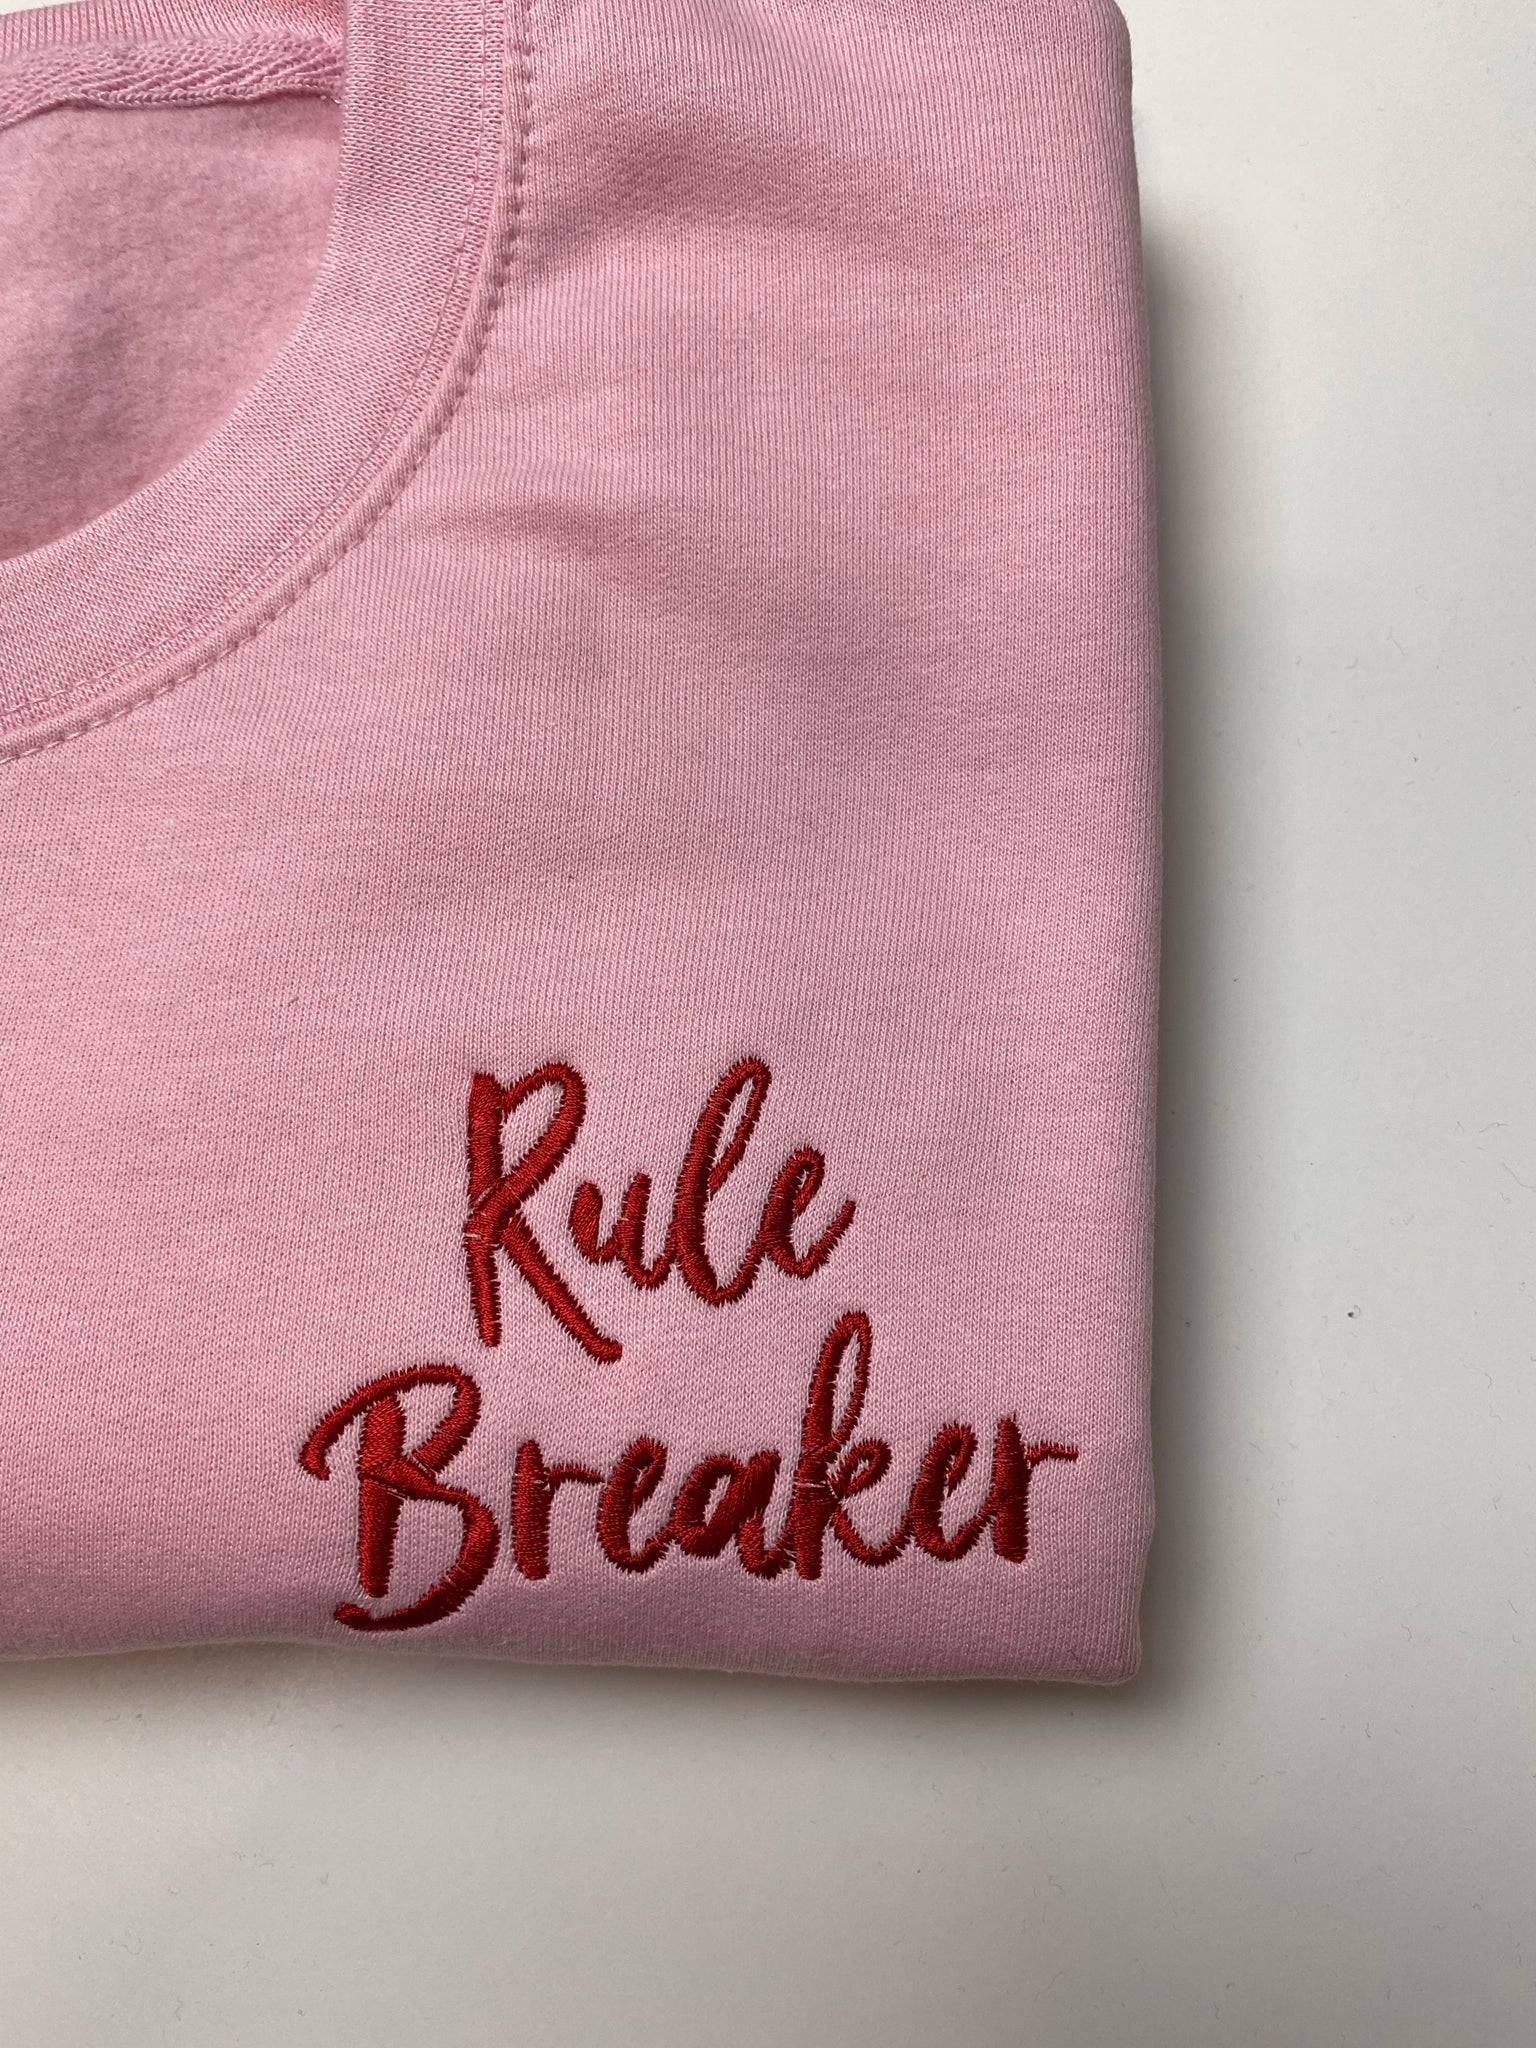 Rule Breaker Sweatshirt | Ted & Stitch 